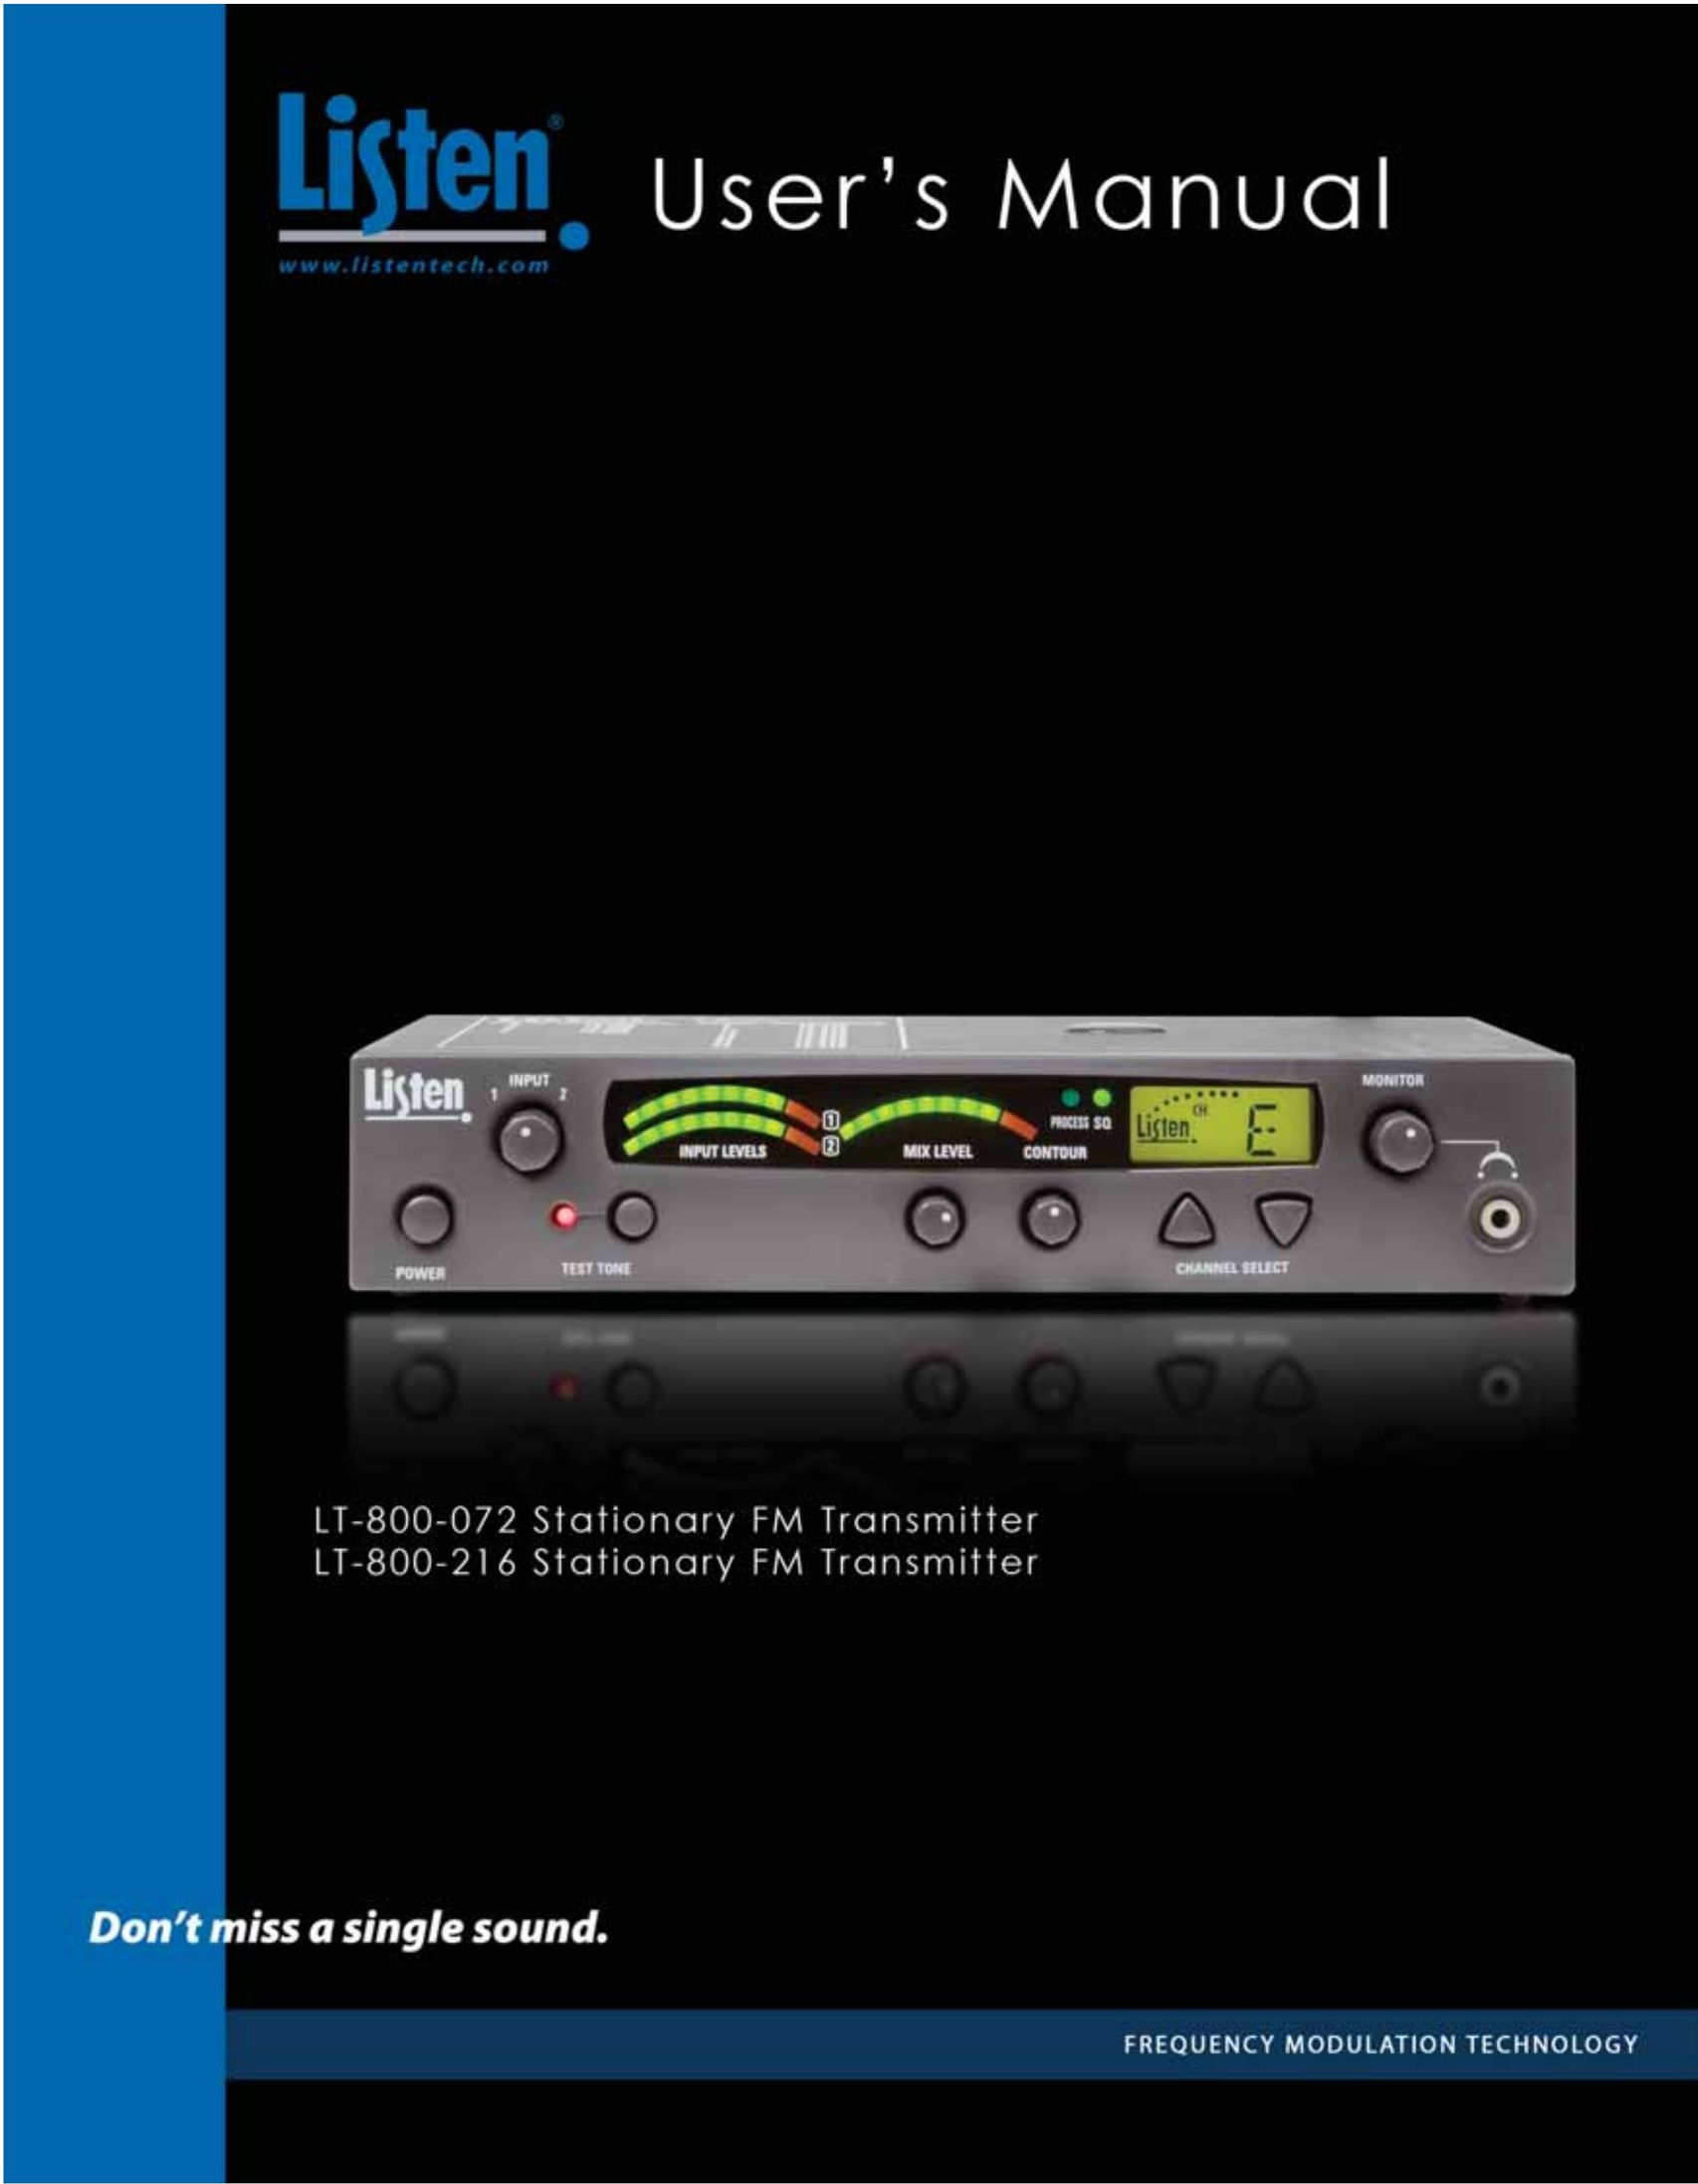 Listen Technologies LT- 800-072 Stereo System User Manual